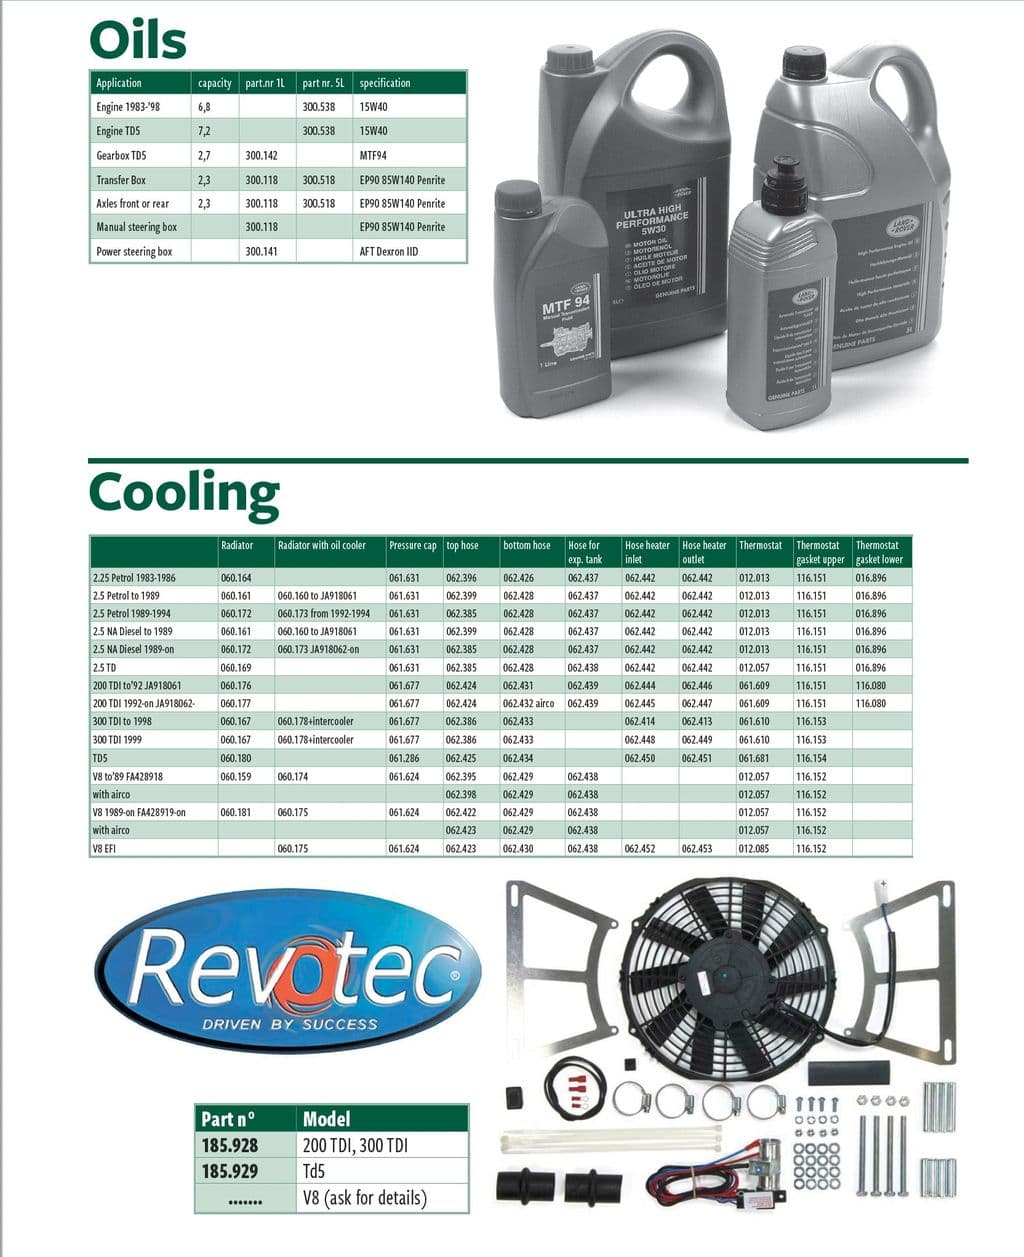 Oils & cooling - sistema de refrigeración - Refrigeración de motor - Morris Minor 1956-1971 - Oils & cooling - 1